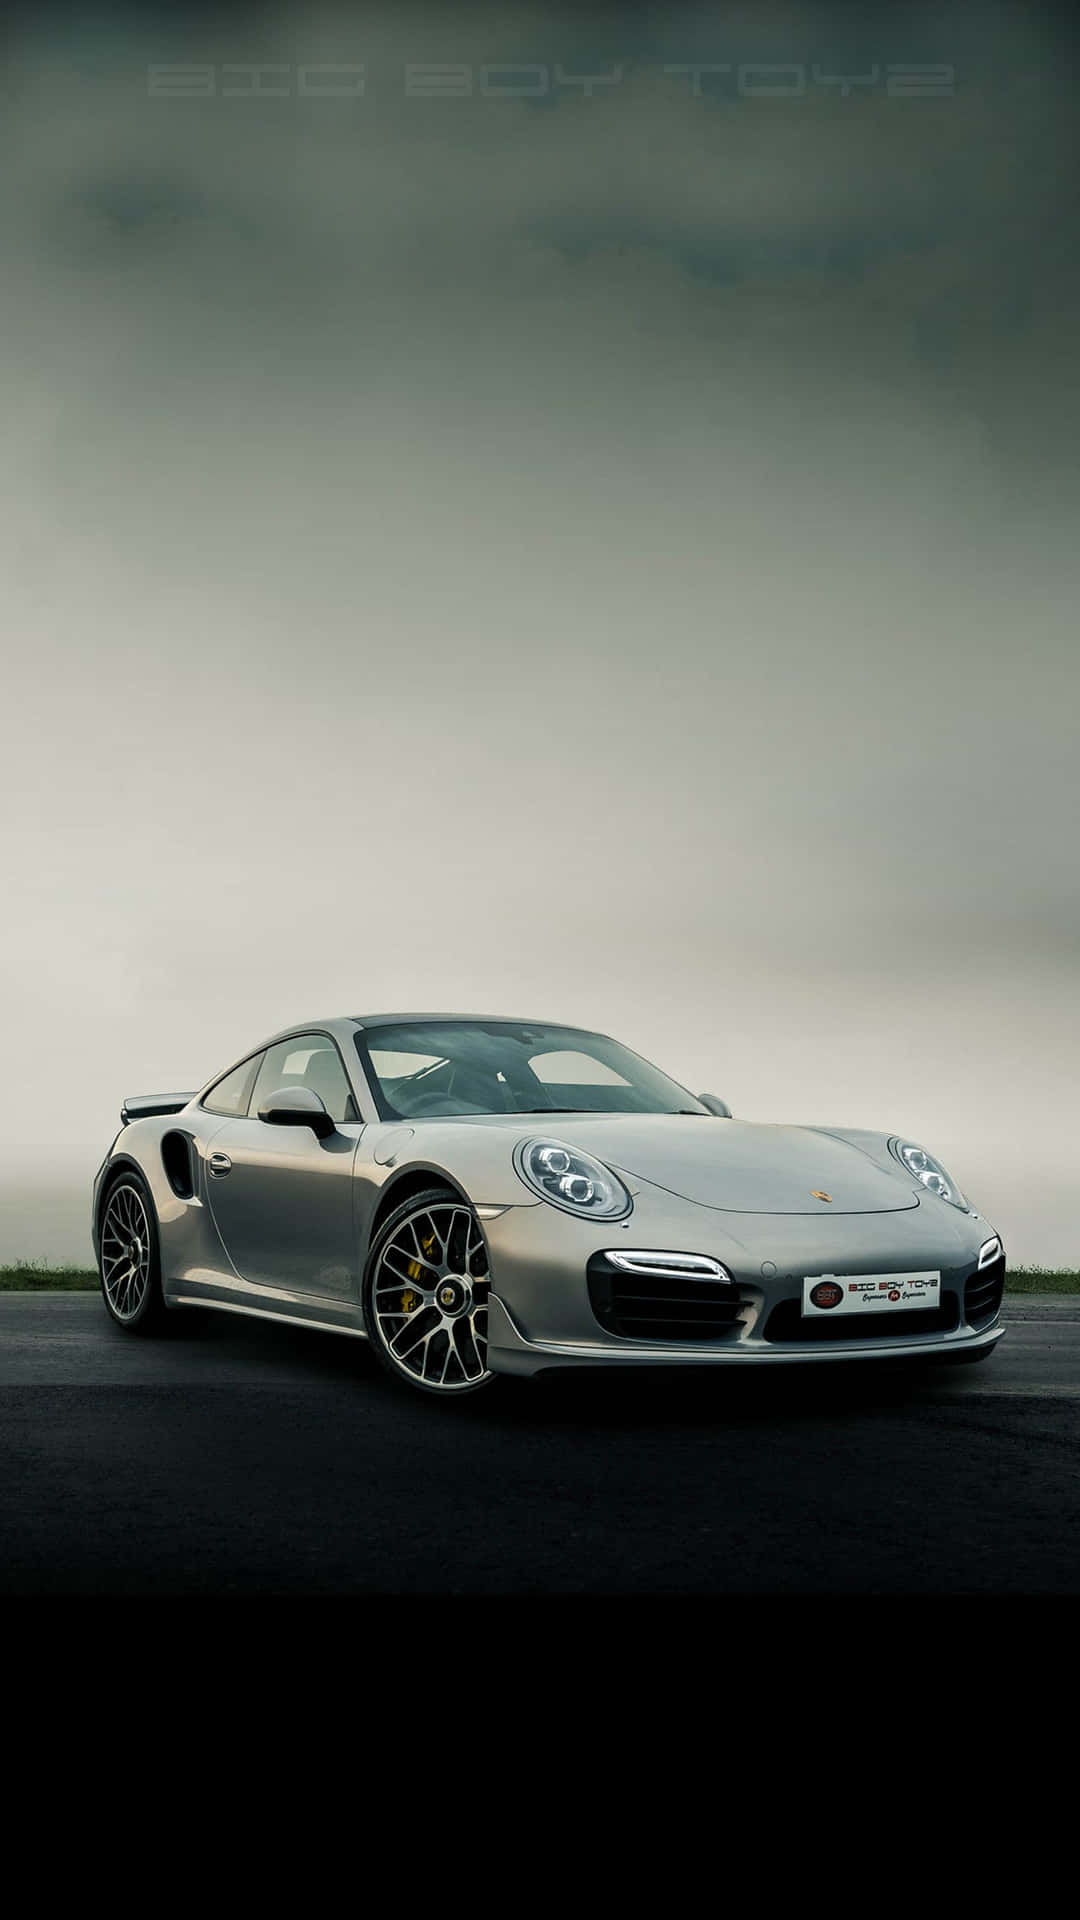 Dashing Silver Porsche Best Car Background